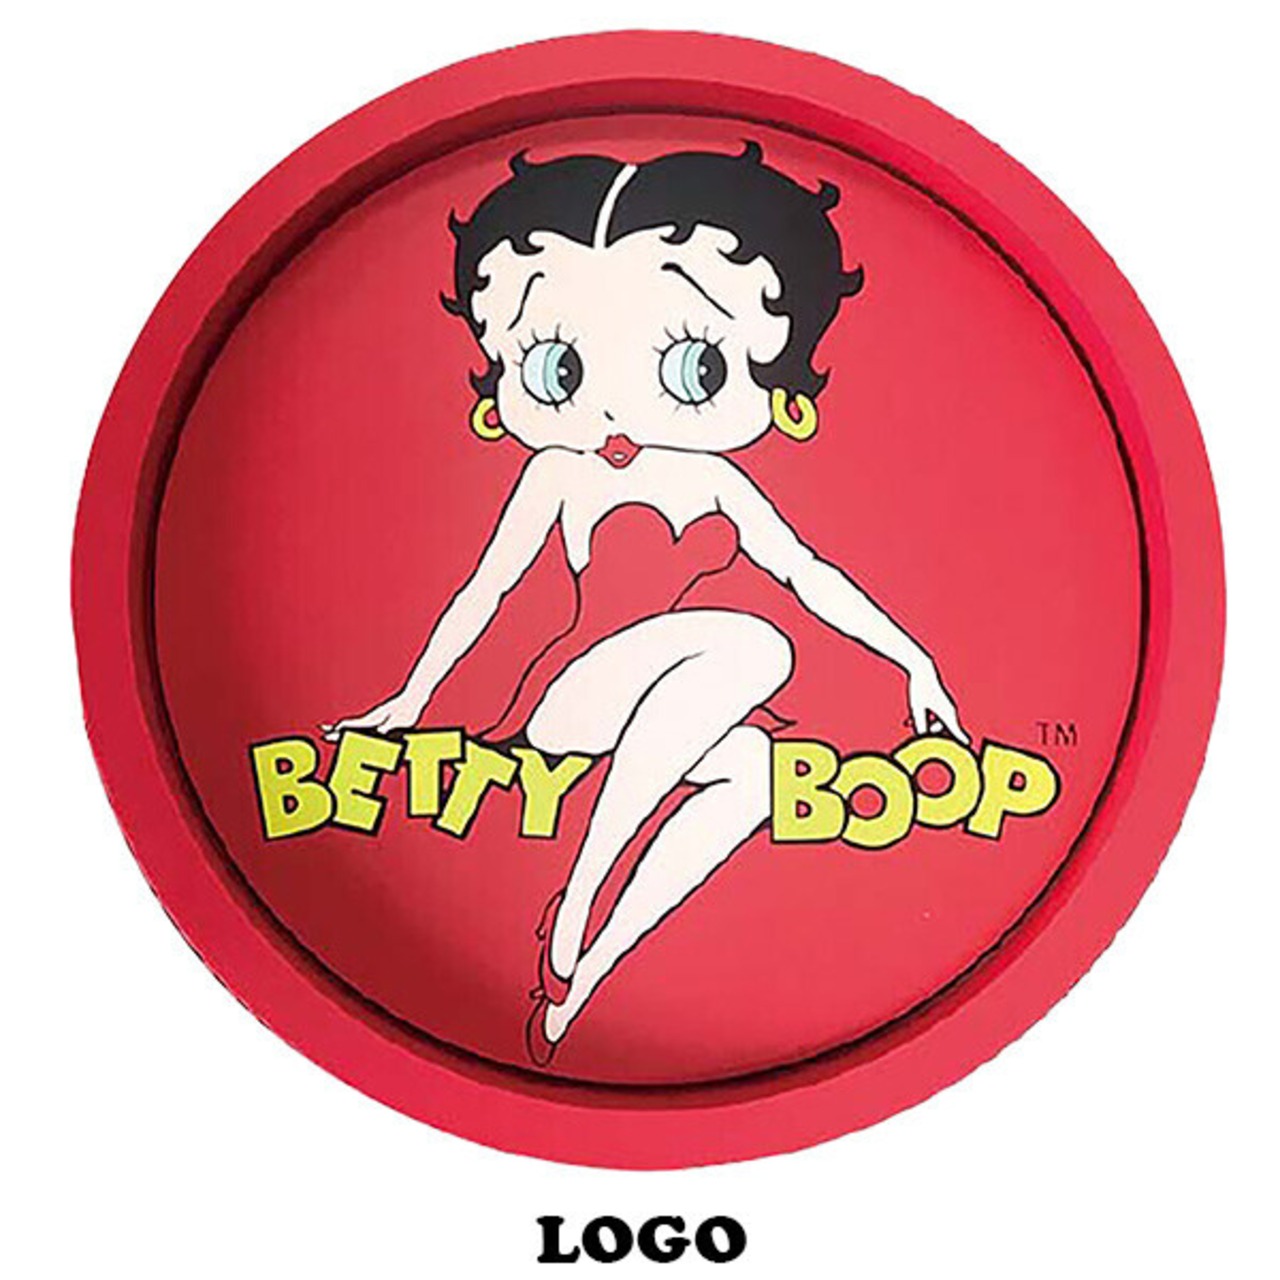 Betty Boop ベティブープ ラバートレイ Logo アメリカン雑貨 プラウドワークス